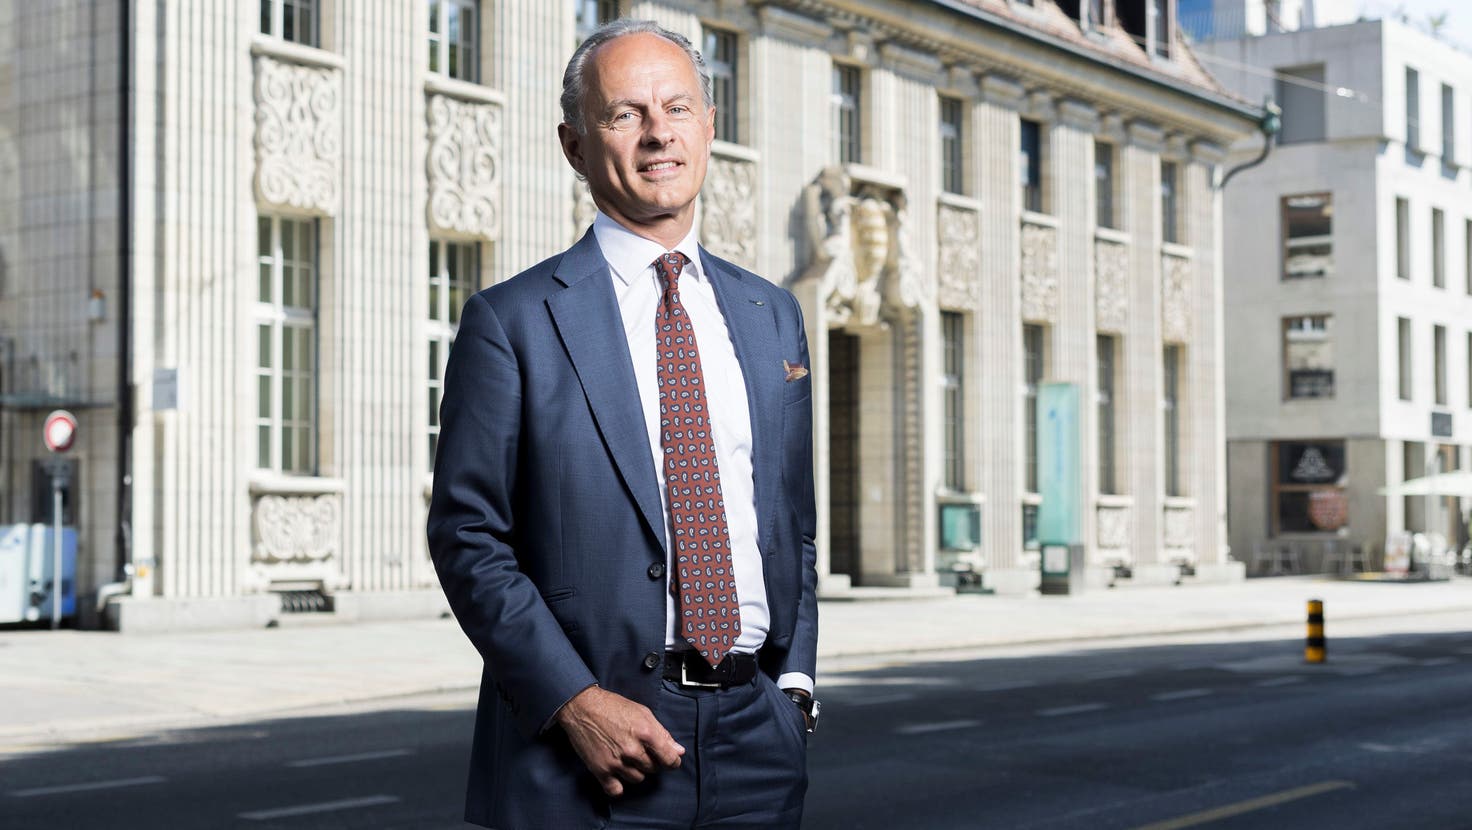 Roberto Belci, Leiter der Credit Suisse Aargau, vor dem Hauptsitz an der Bahnhofstrasse in Aarau (Foto vom Juni 2022). (Bild: Severin Bigler)